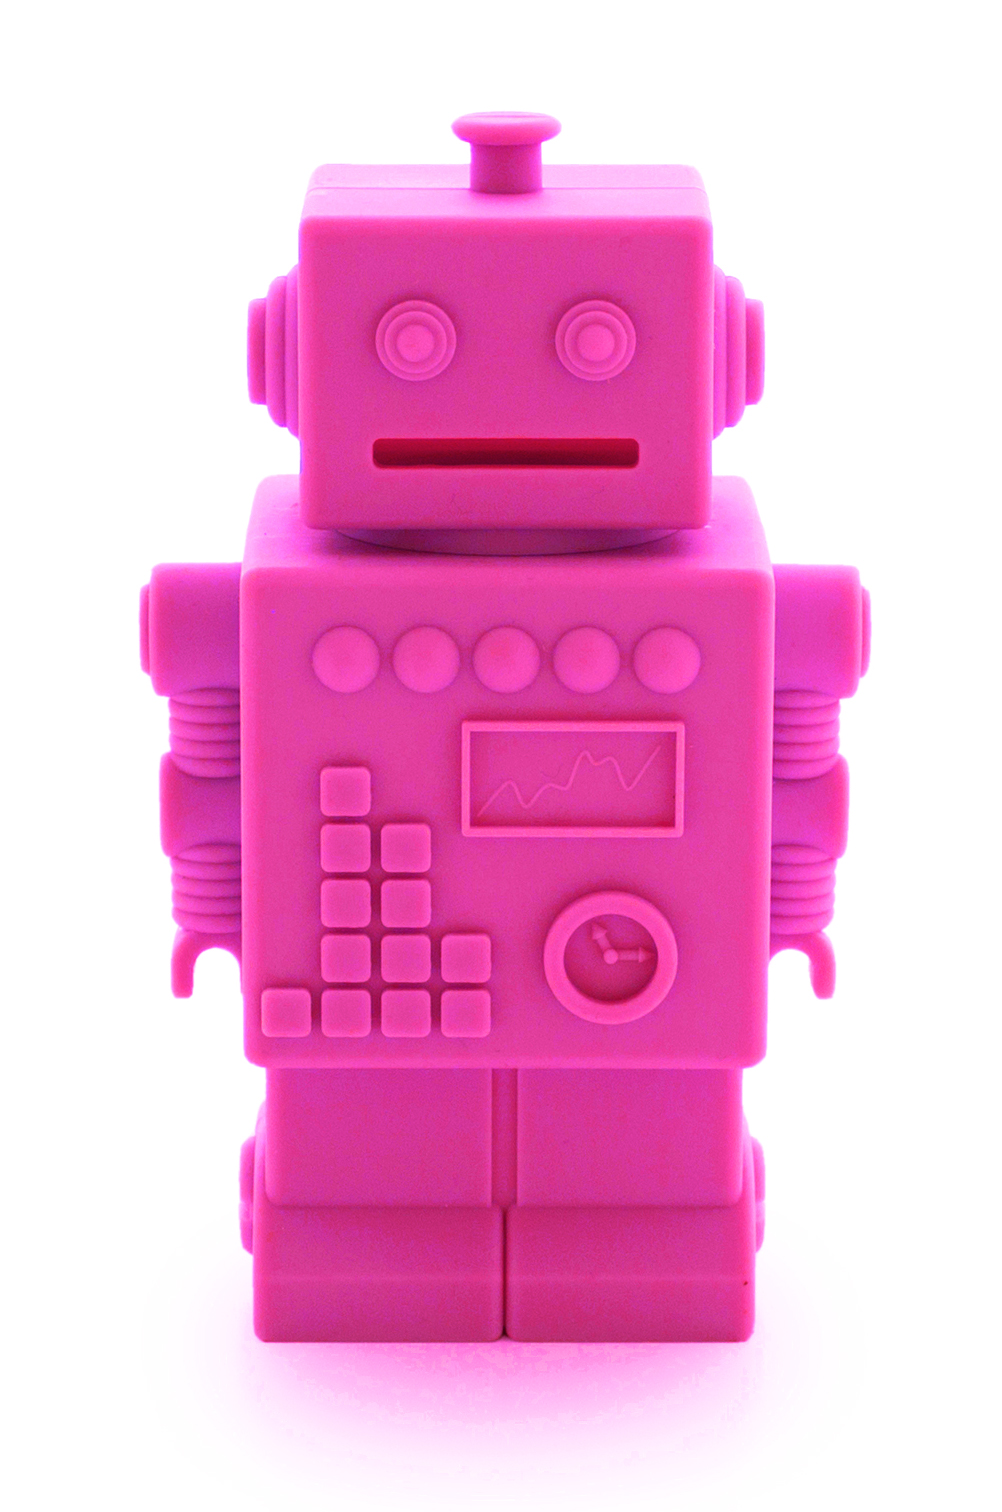 Robert the Robot, dekoration eller sparb?ssa - KG Design • Pryloteket